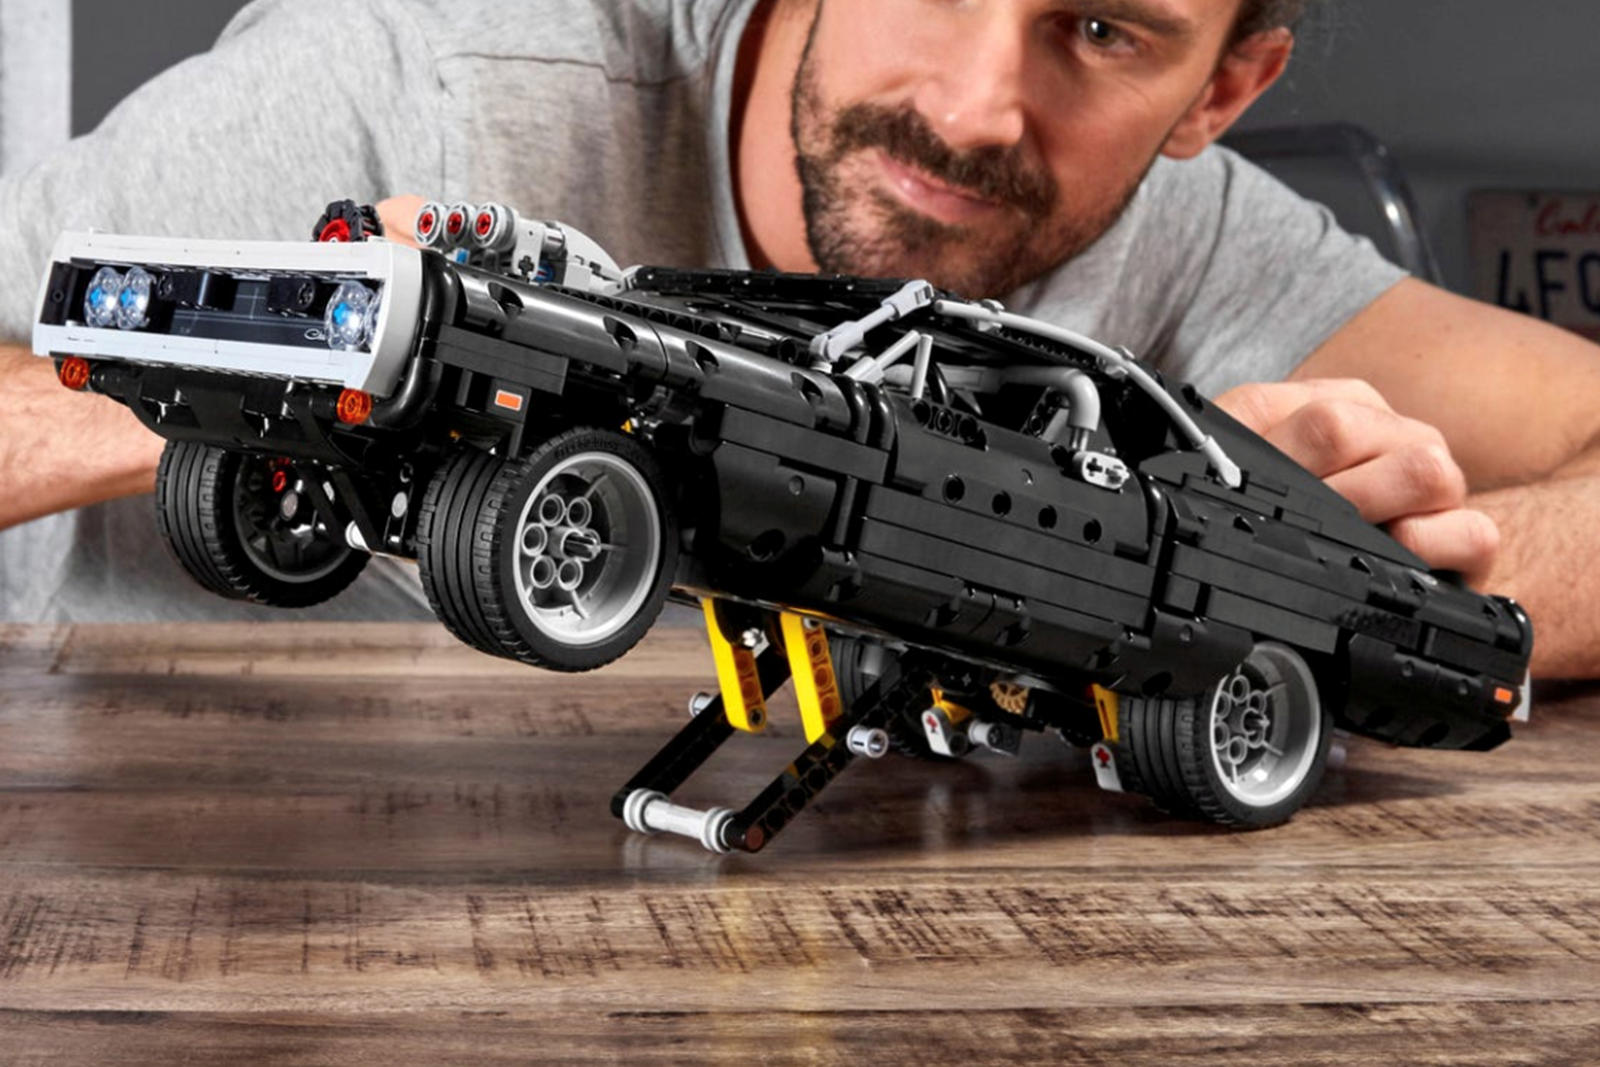 Dodge Charger Доминика является настолько мощным, что он даже соревнуется против Toyota Supra Брайана. Чтобы имитировать это, модель Lego оснащена системой стойки, которая может поднять переднюю часть в воздух.